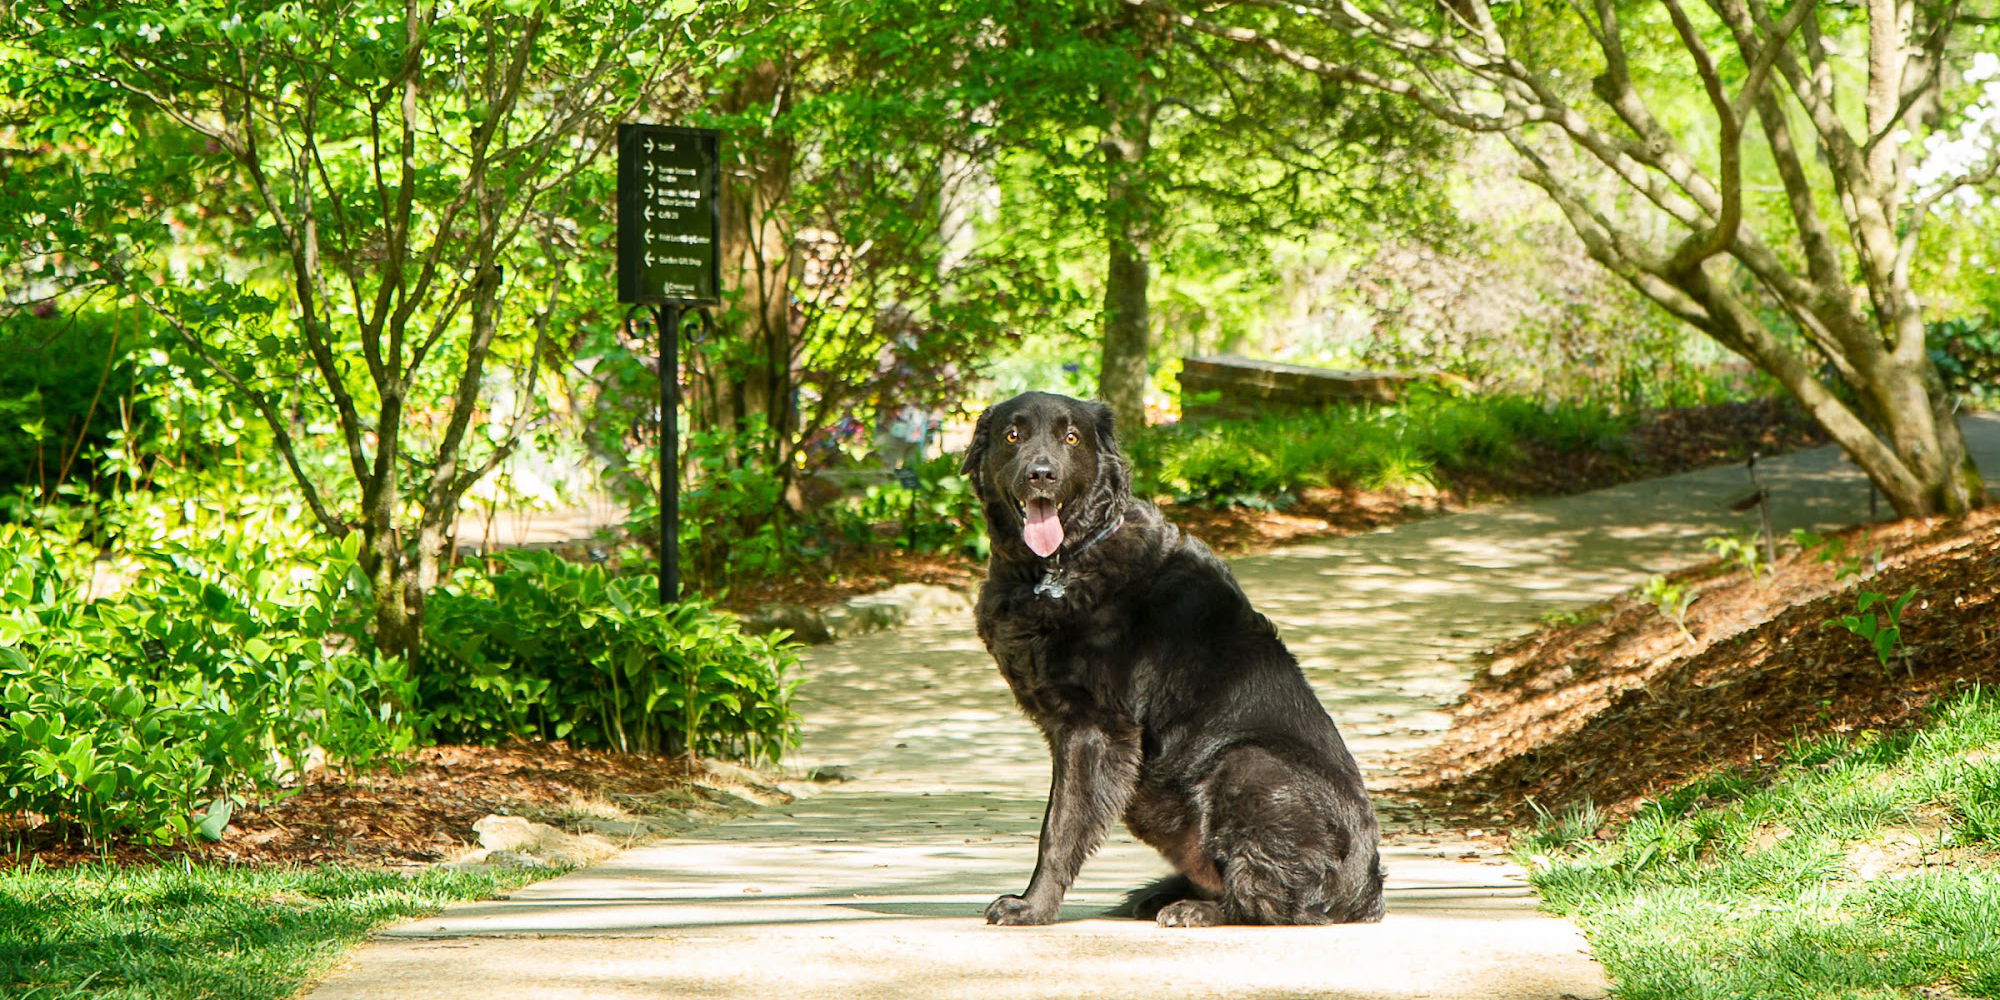 Dogs & Dogwoods promotional image